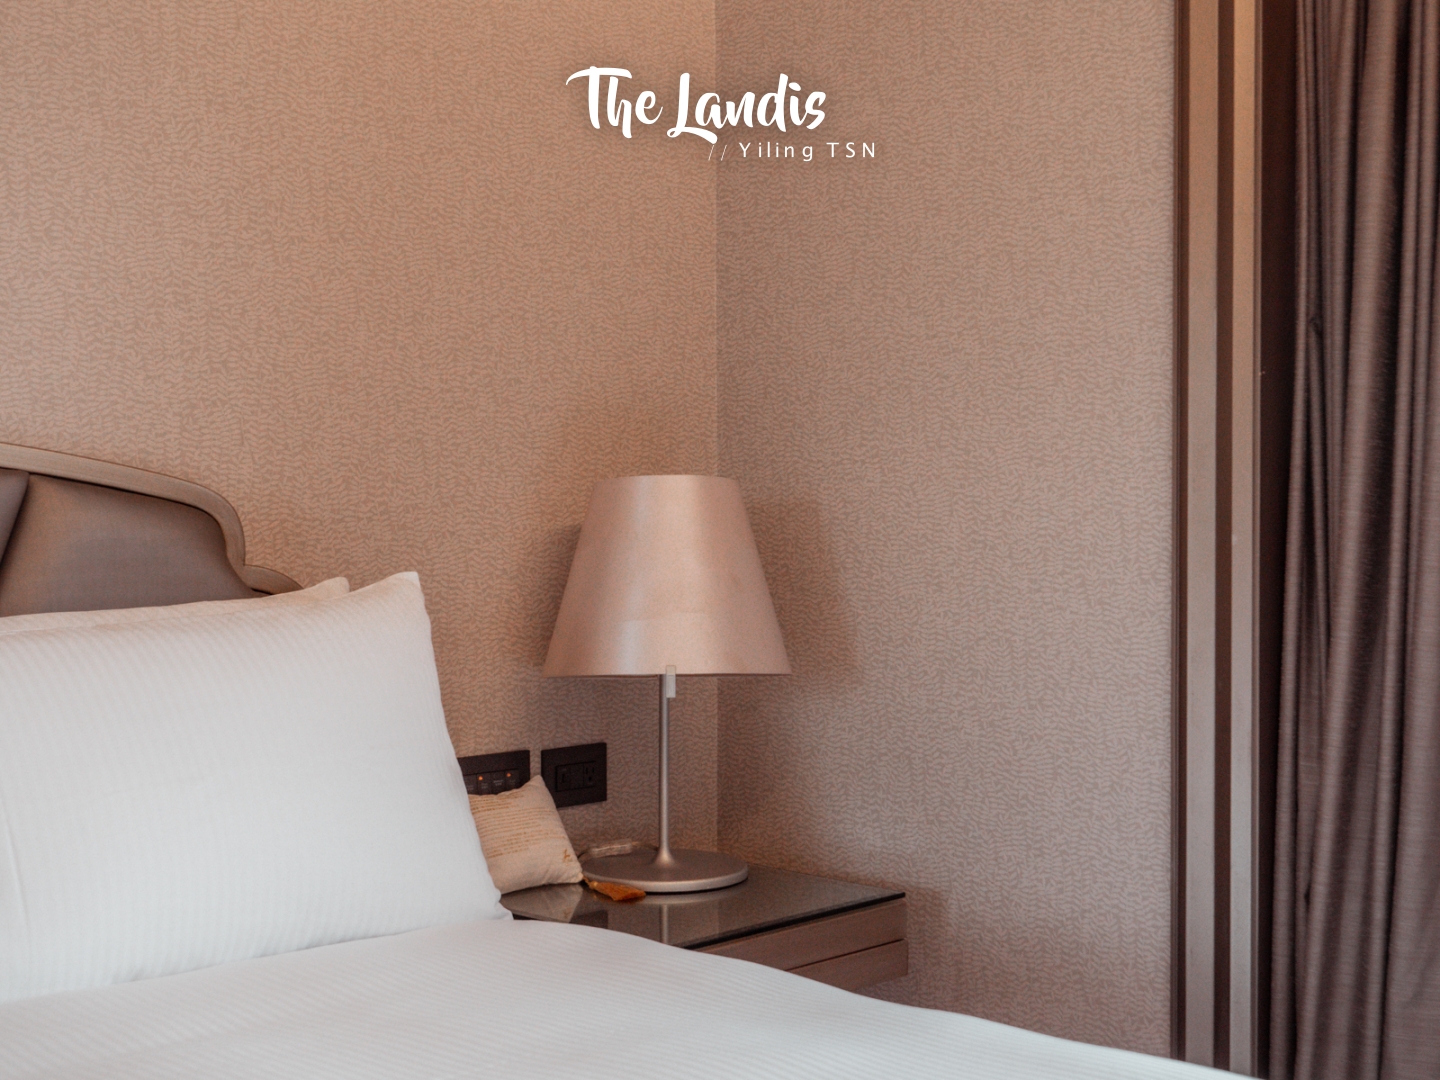 台北亞都麗緻大飯店 The Landis Taipei Hotel：內斂雅緻五星品牌